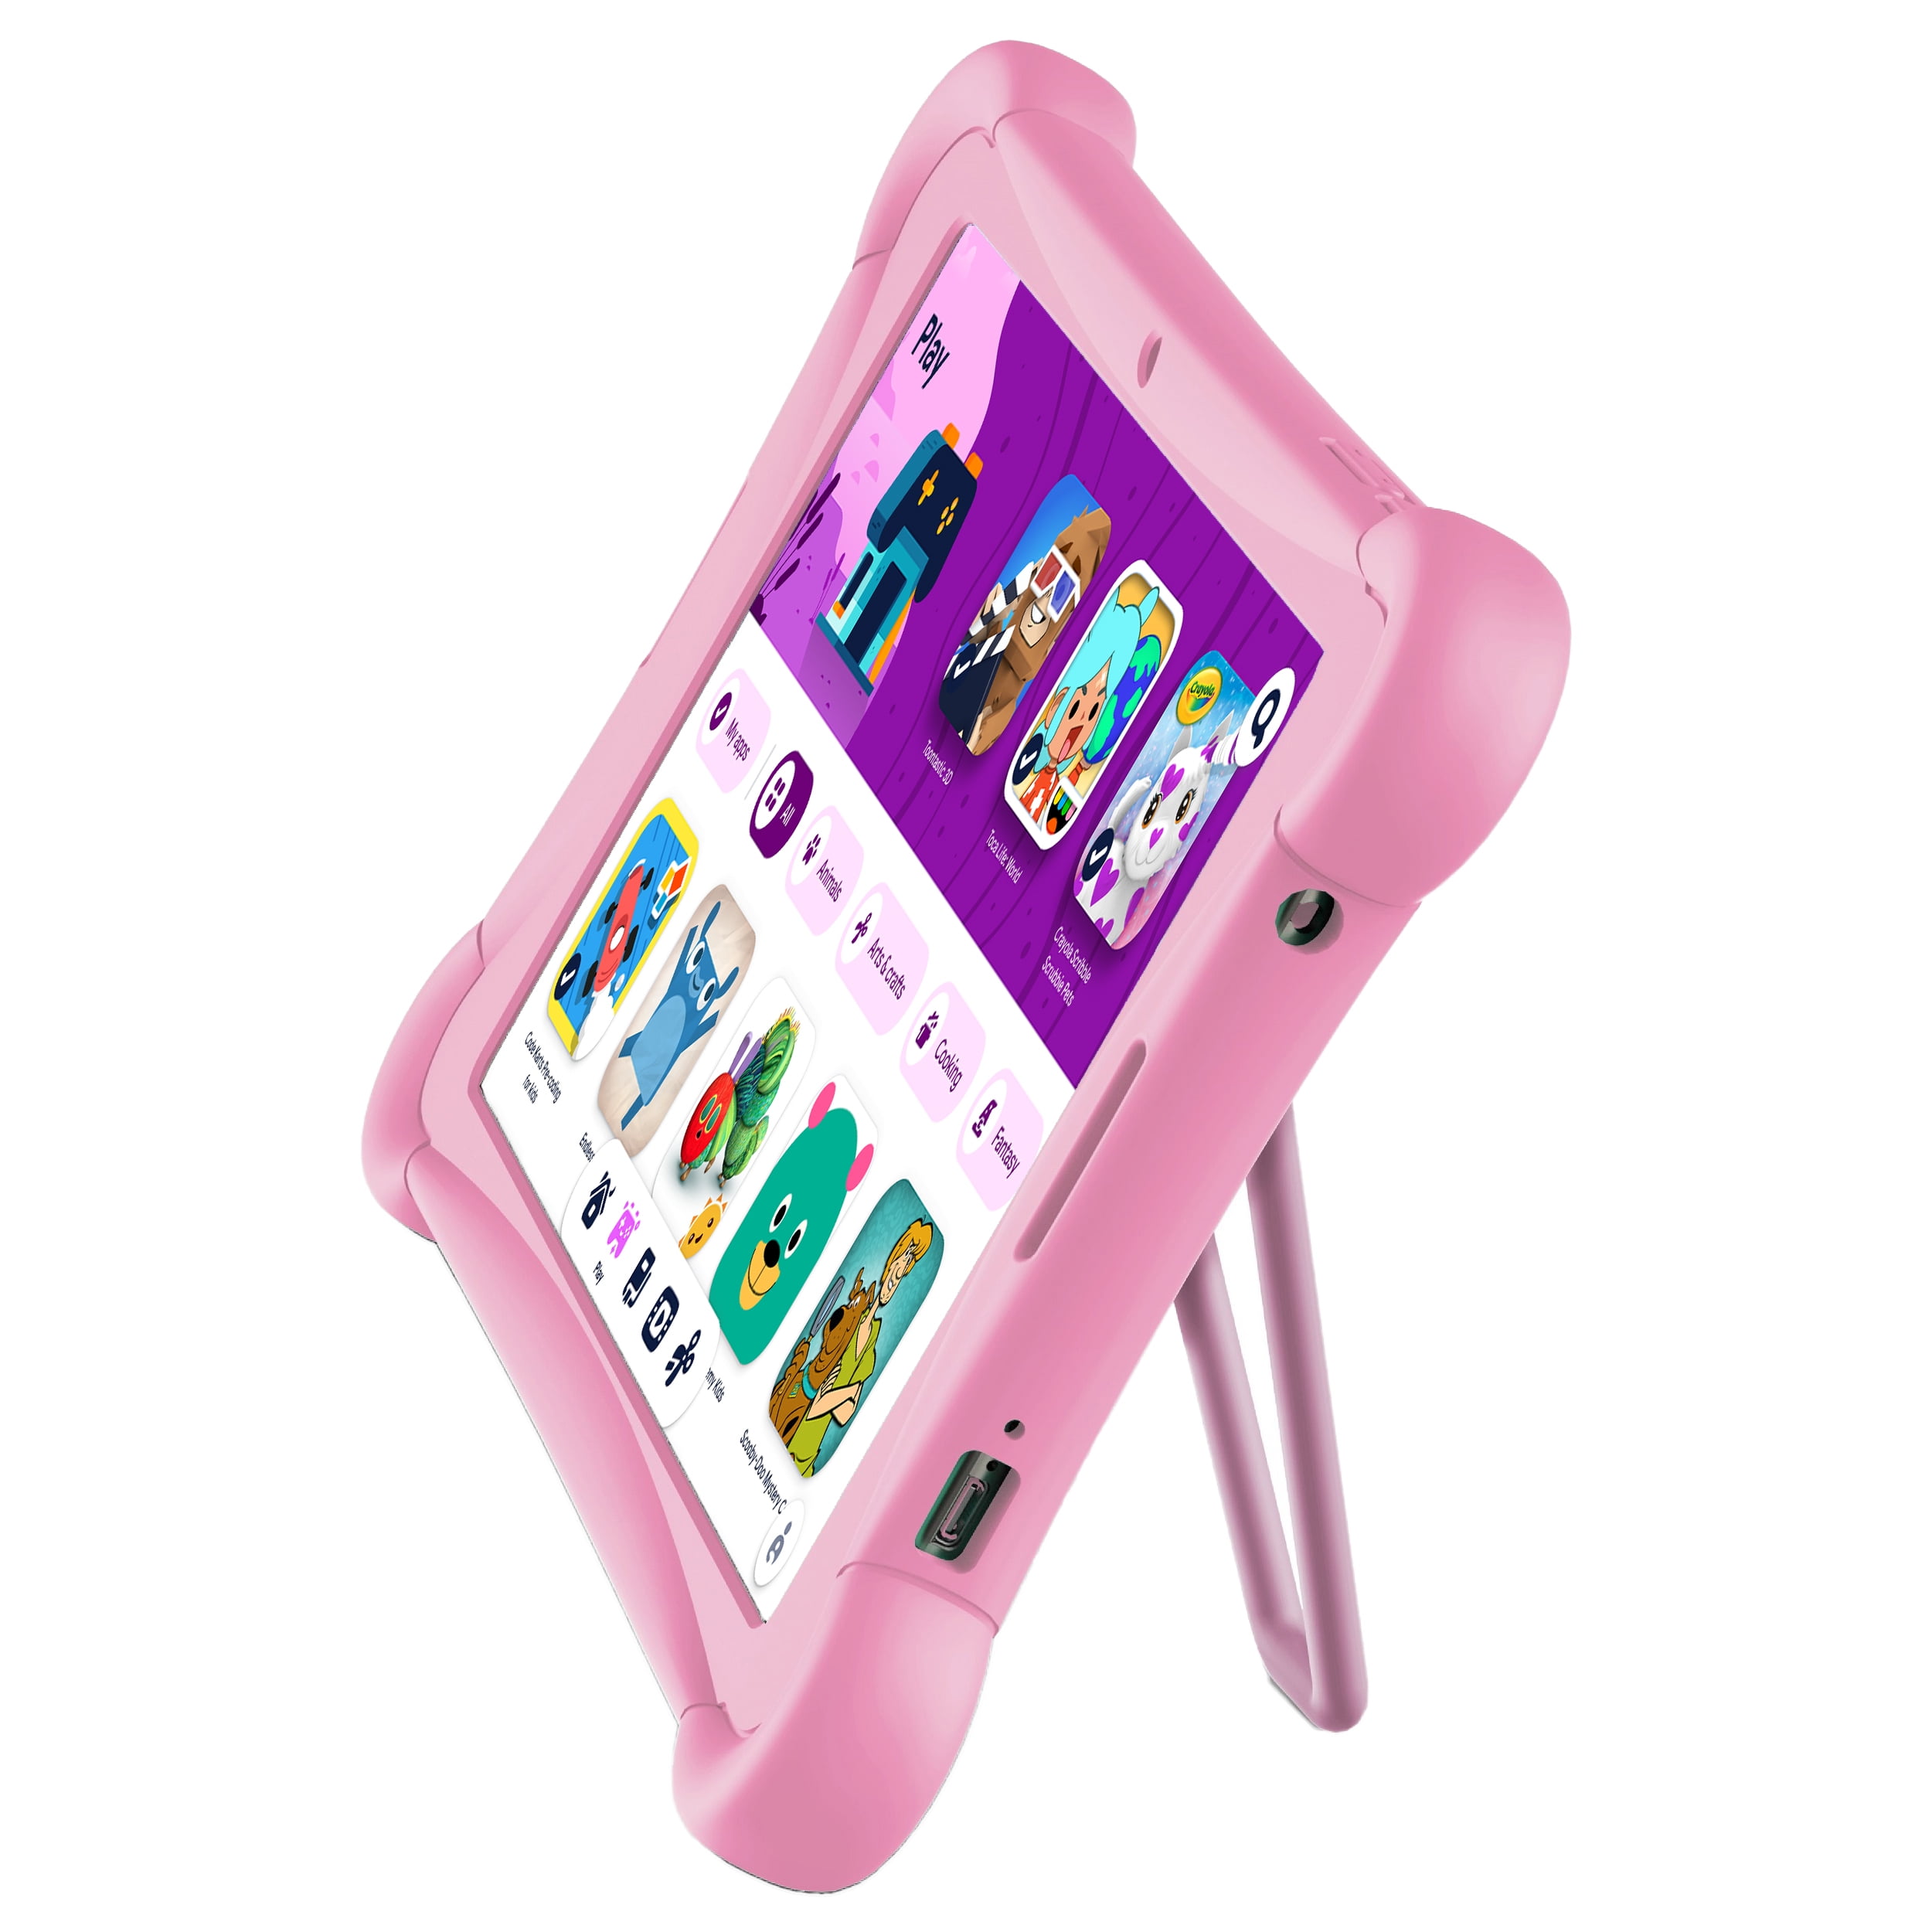 Pritom K10 - Tablette Enfant - Tablette Enfant à partir de 3 ans - Tablette  - Tablette Enfant 10 Pouces - 32 GB - Android 10 - Violet